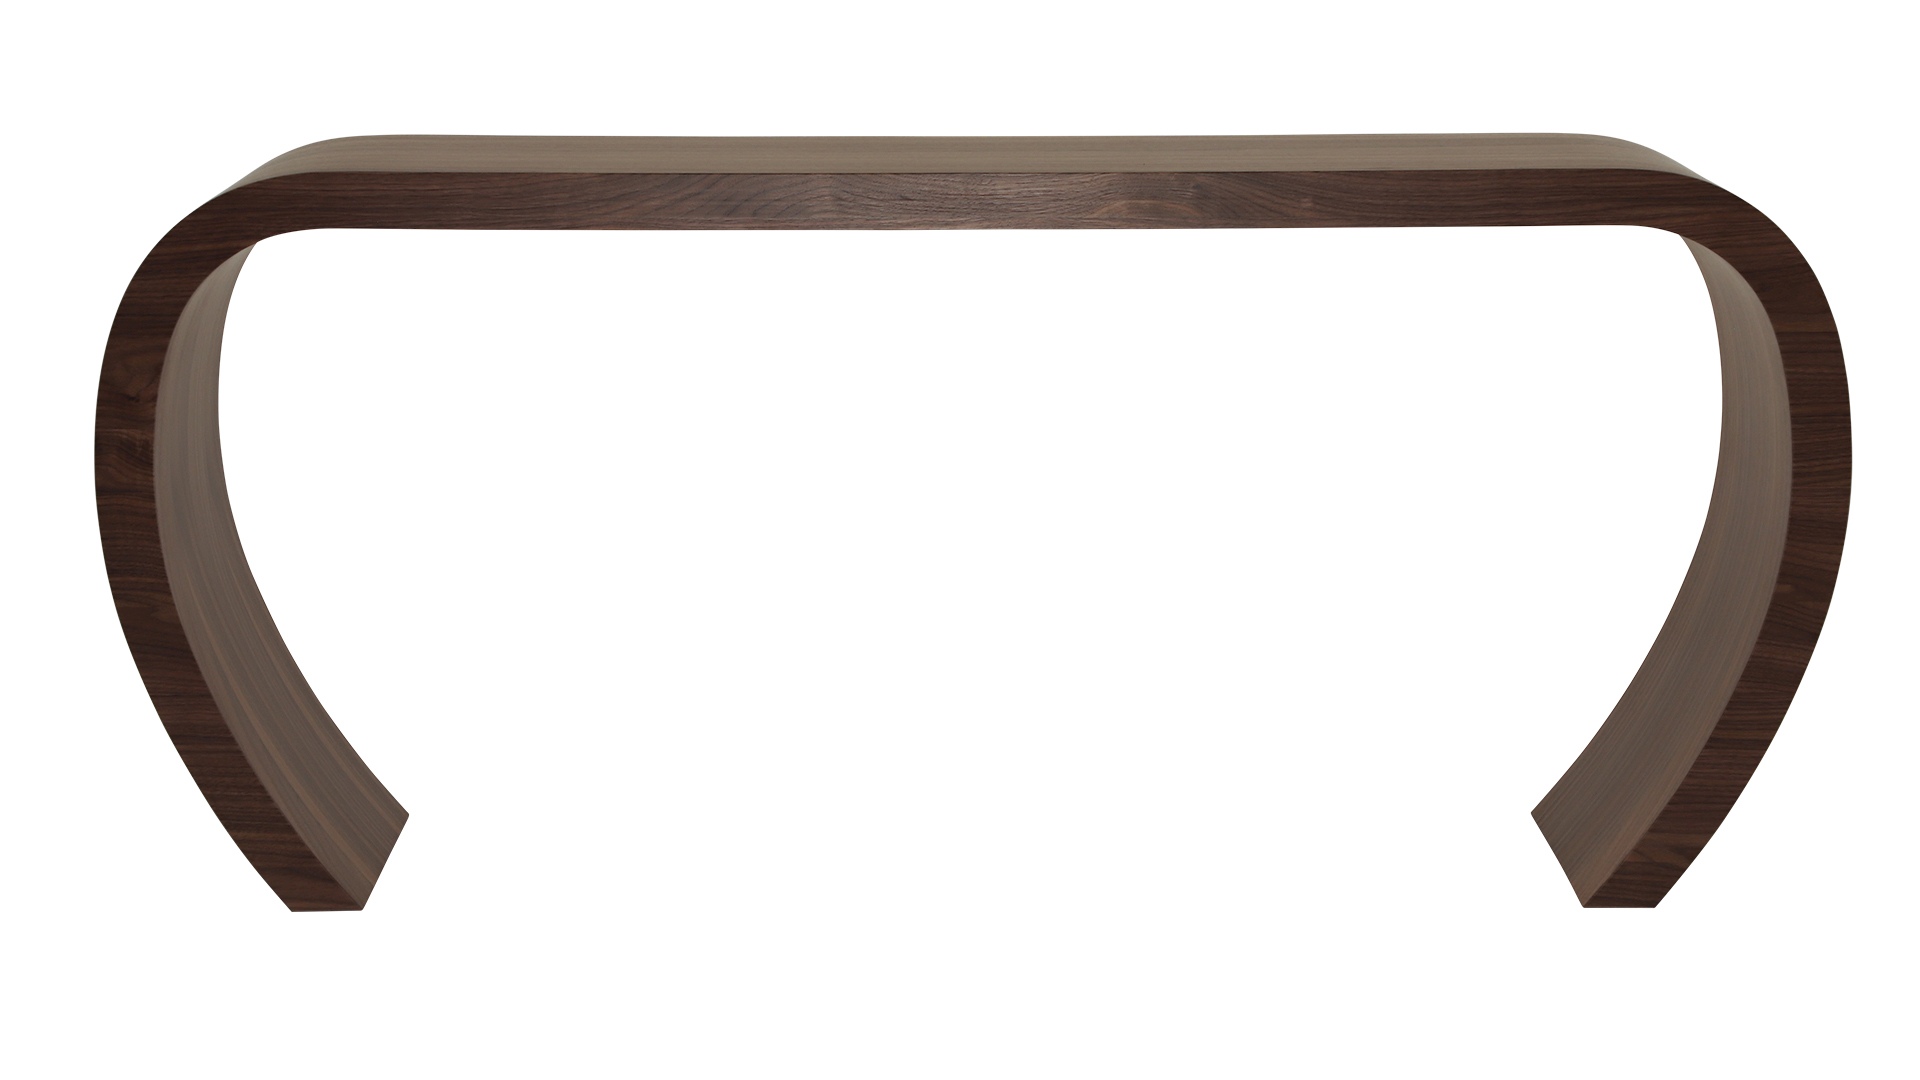 Das Sideboard Sidebow überzeugt mit seiner besonderen Form. Gefertigt wurde das Sideboard aus Echtholzfurnier. Die Farbe ist Nussbaum. Es ist ein Produkt der Marke Jan Kurtz und hat eine Breite von 168 cm.